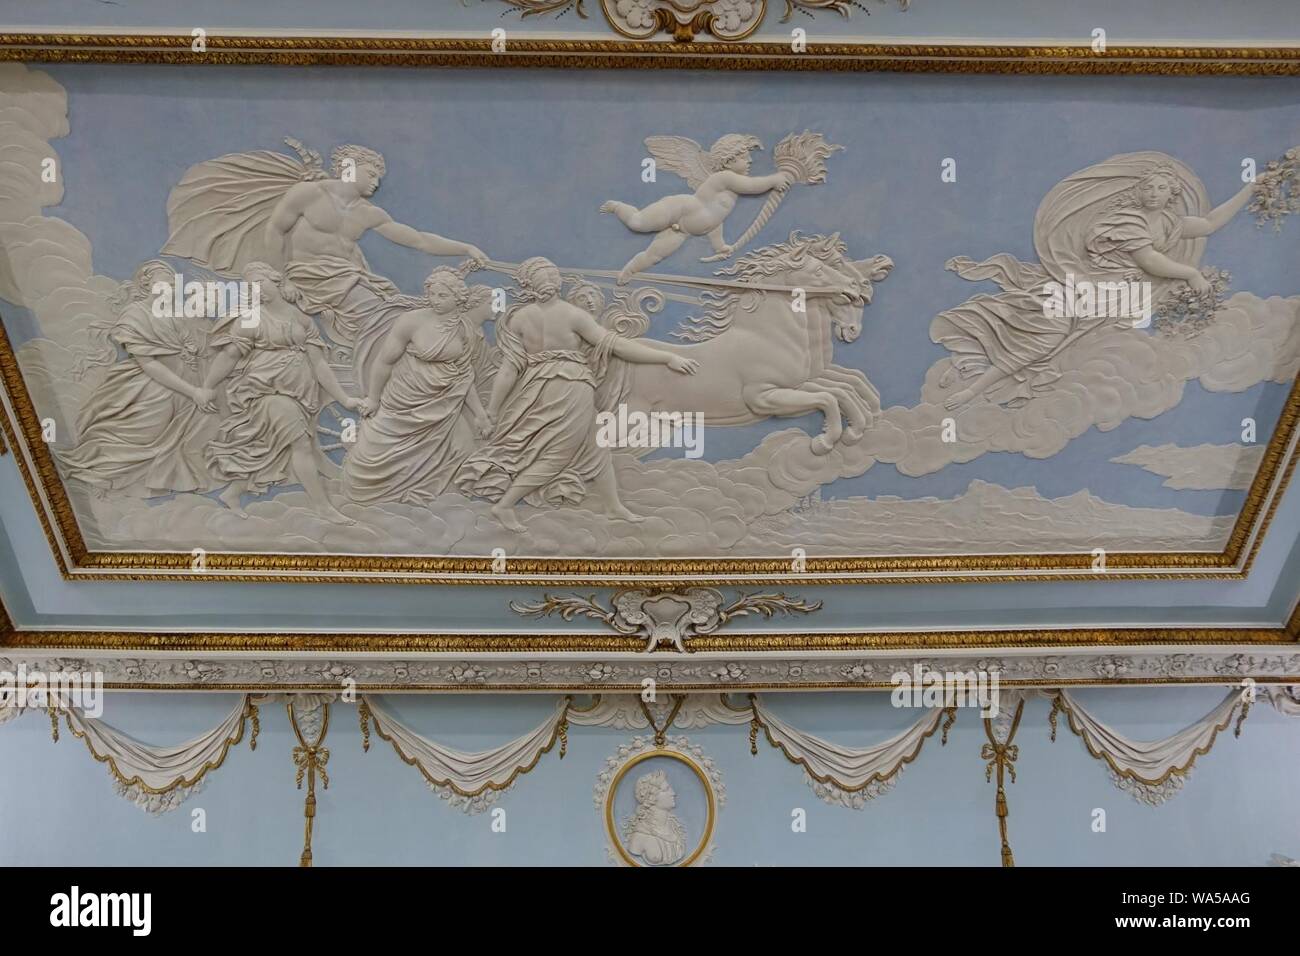 Salle à manger décoration de plafond par Francesco Vassalli après Guido Reni's 'Apollo et les heures', ch. 1724-1763, le plâtre - Shugborough Hall - Staffordshire, Angleterre Banque D'Images